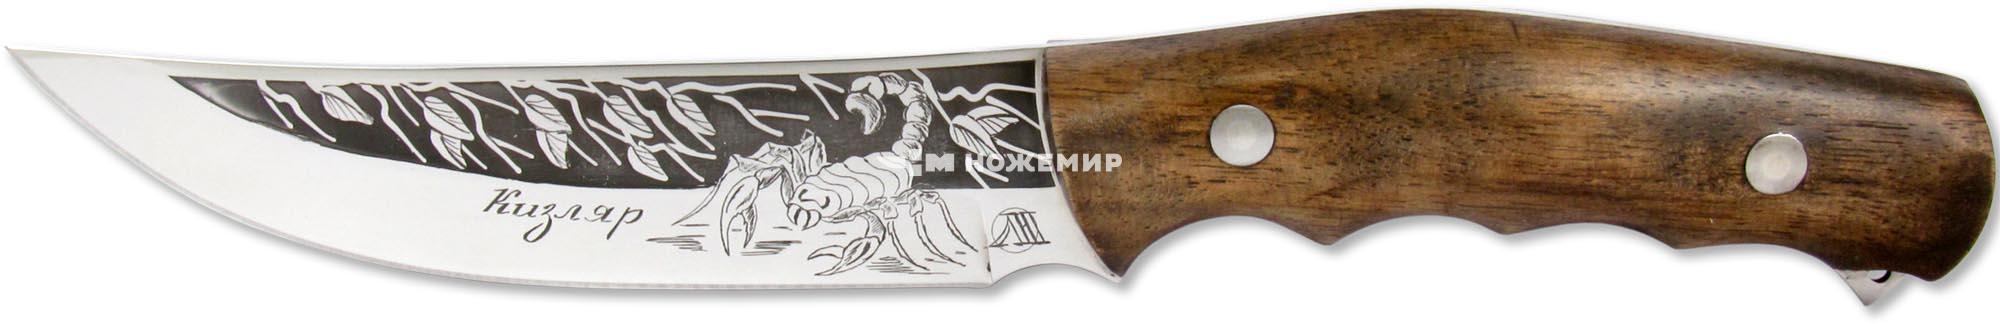 Нож нескладной цельнометаллический Кизляр СКОРПИОН2-ЦМ (6621) с кожаными ножнами